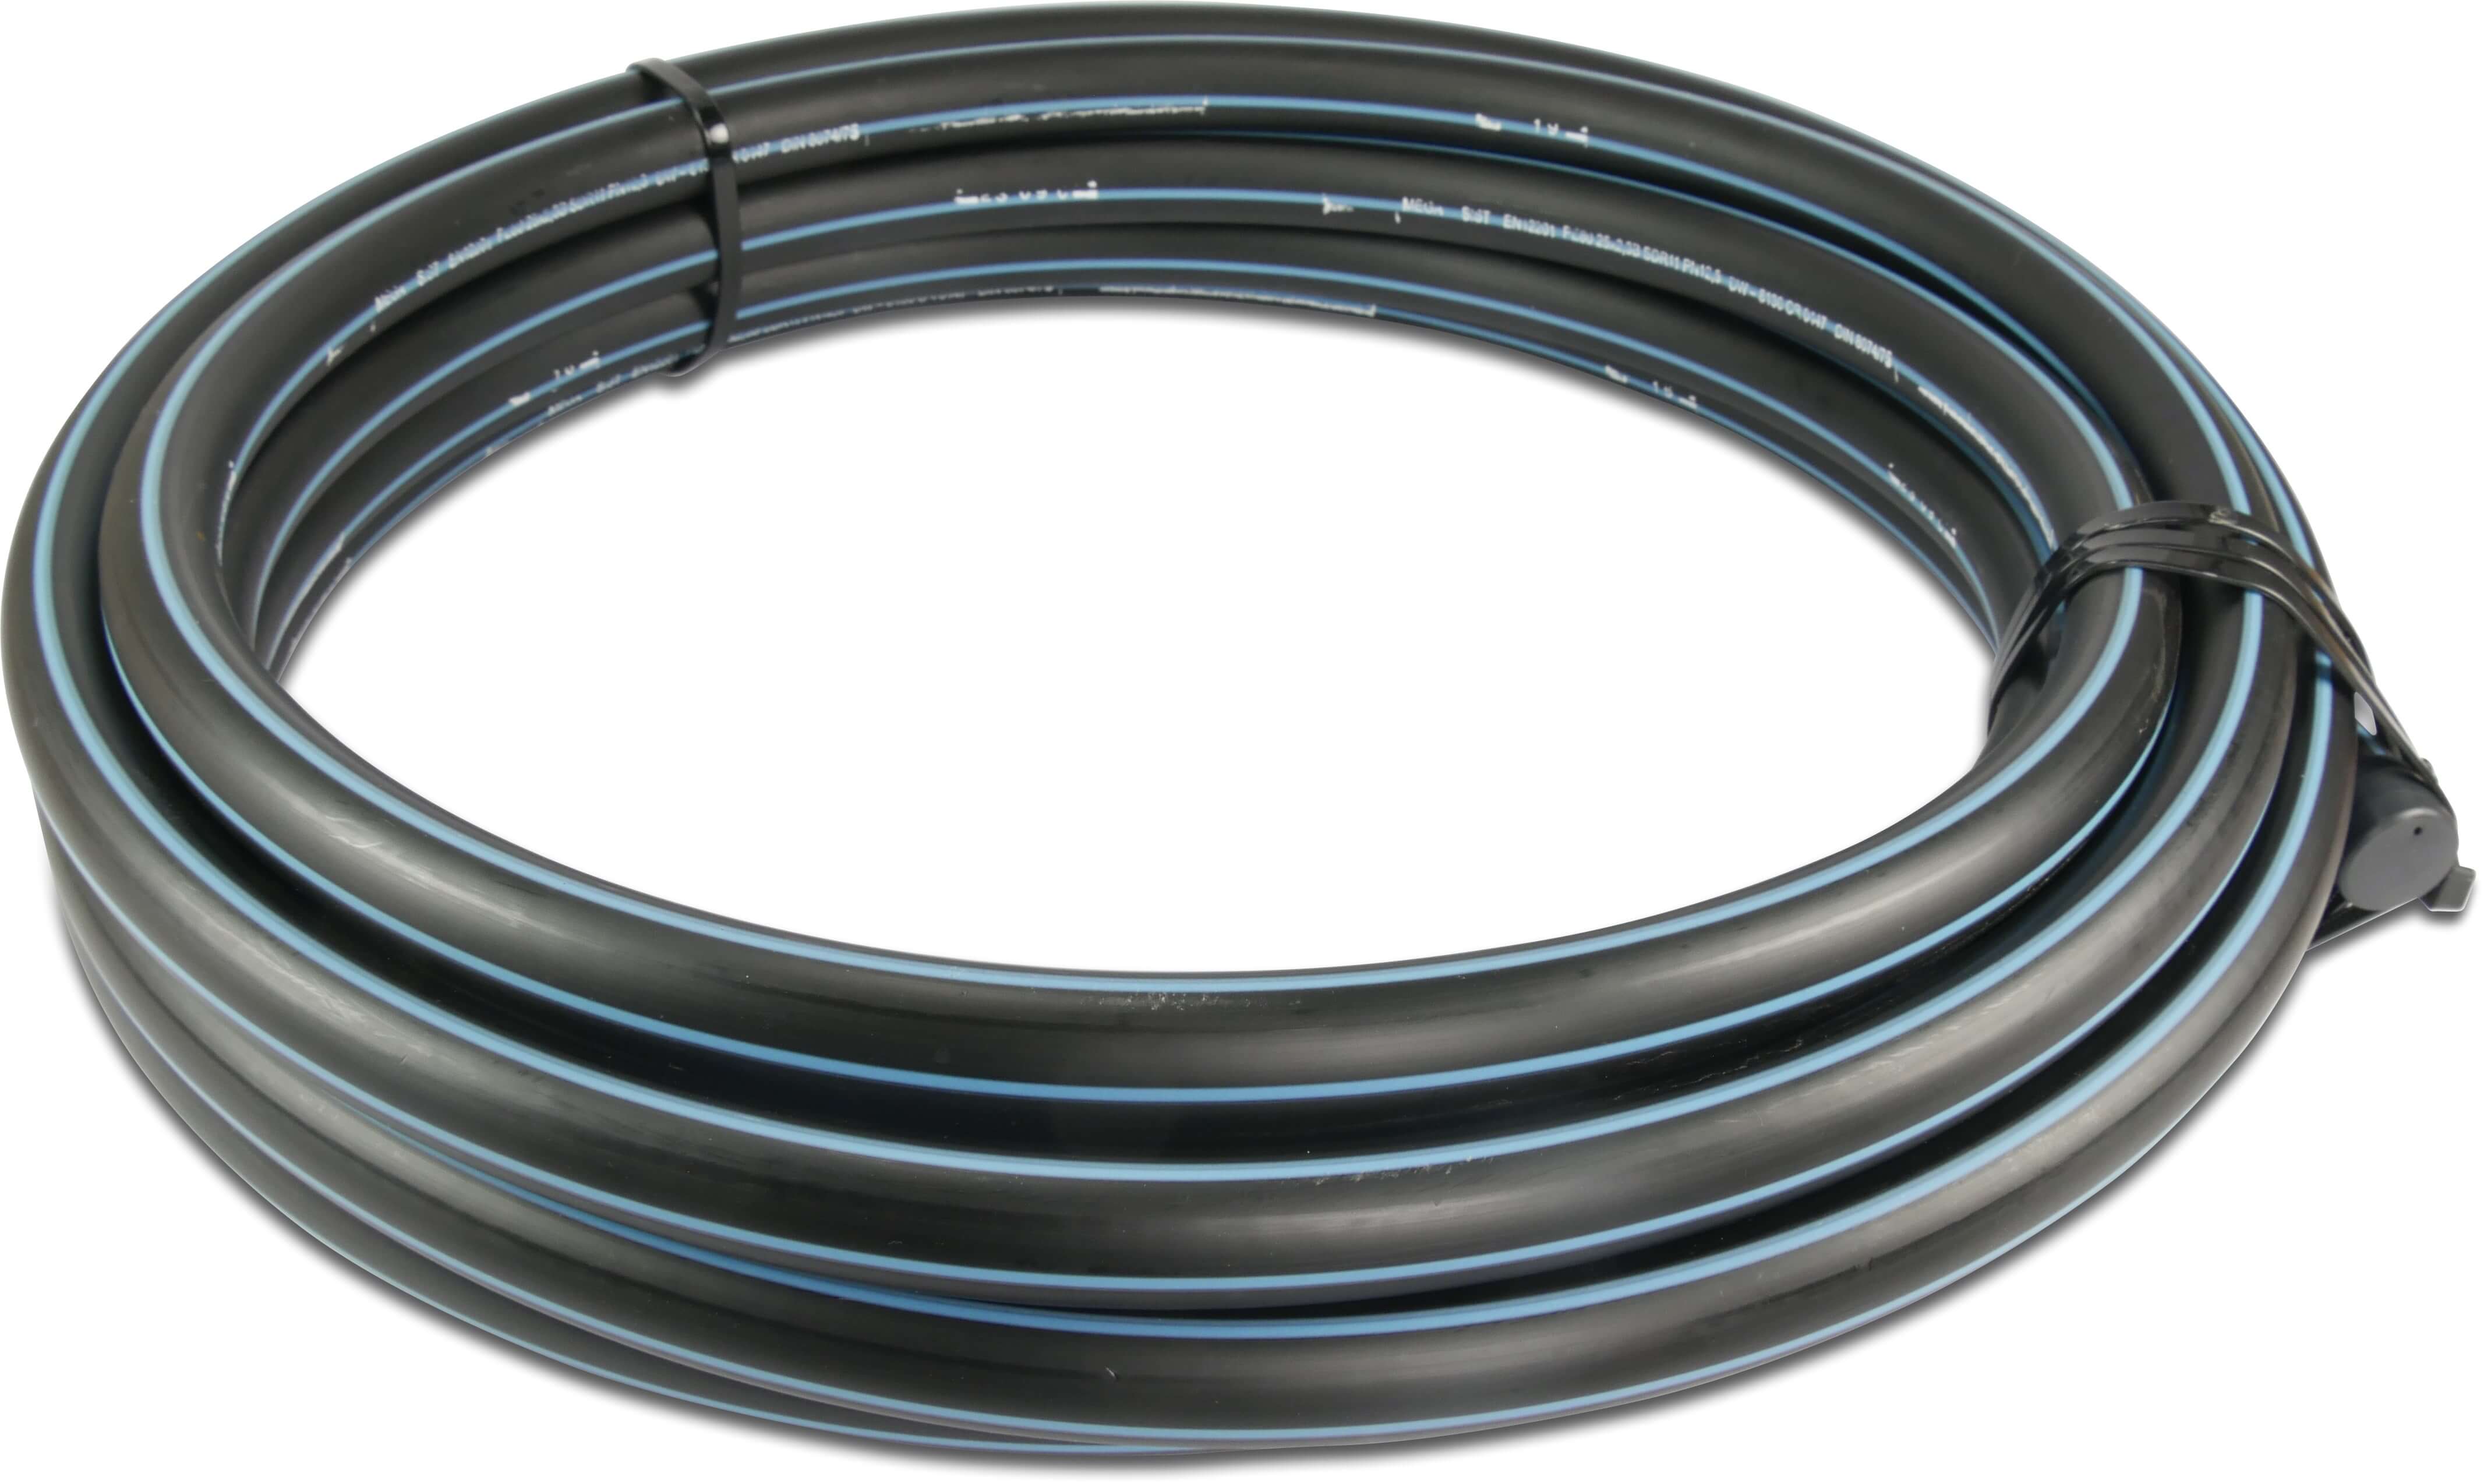 Rura ciśnieniowa PE80 20 mm x 2,0 mm gładkie SDR 11 12,5bar czarno-niebieski 10m DVGW type D=0,60m